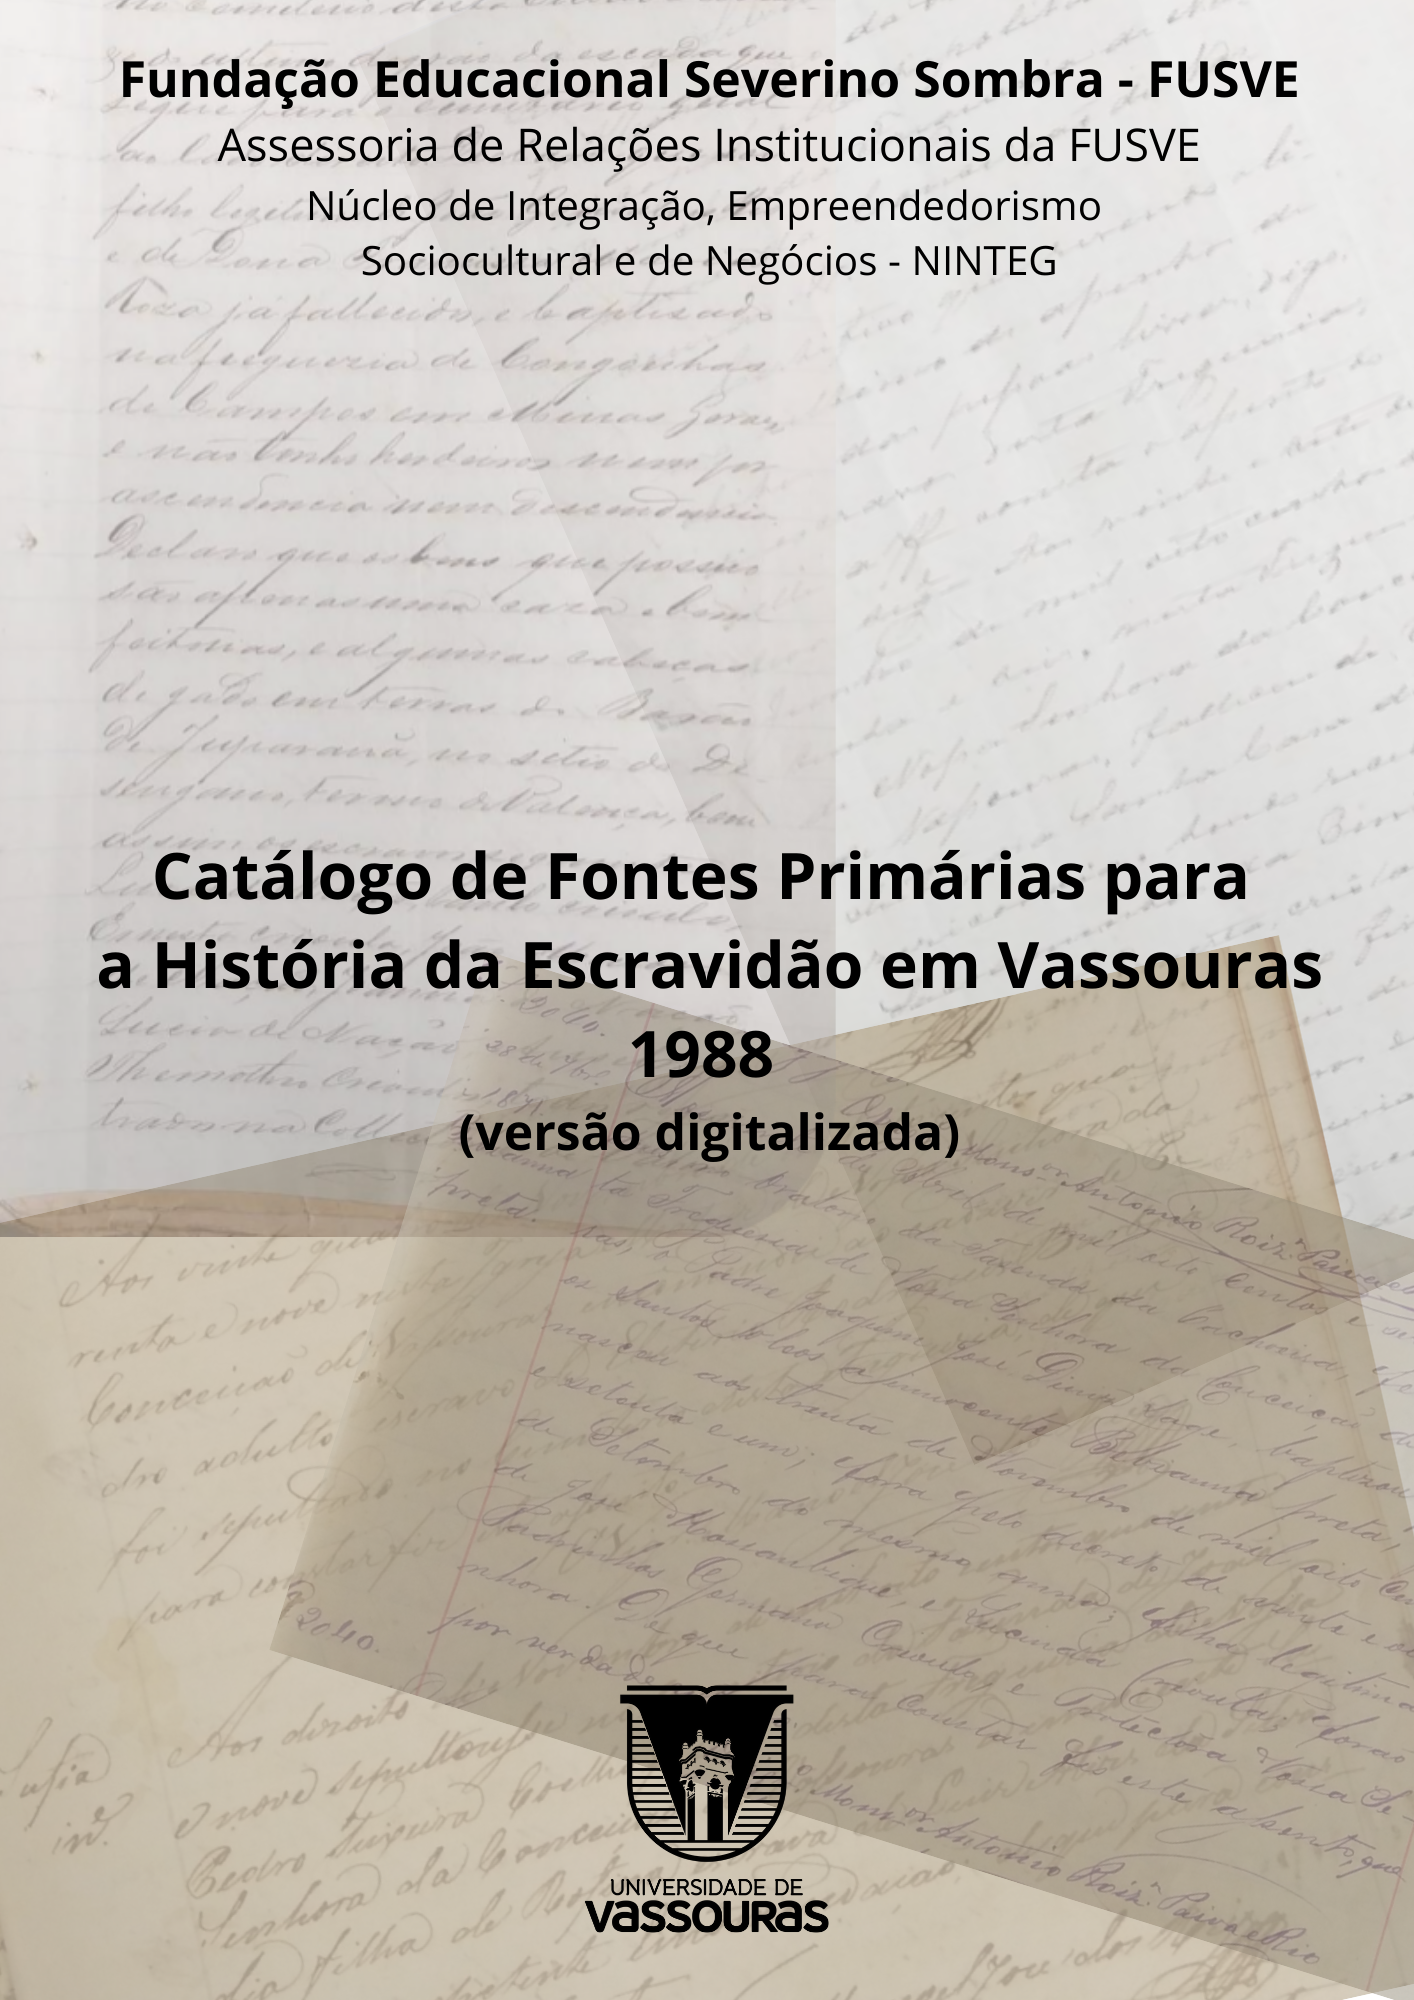 					View 2023: Catálogo de Fontes Primárias para História da Escravidão em Vassouras - v1988
				